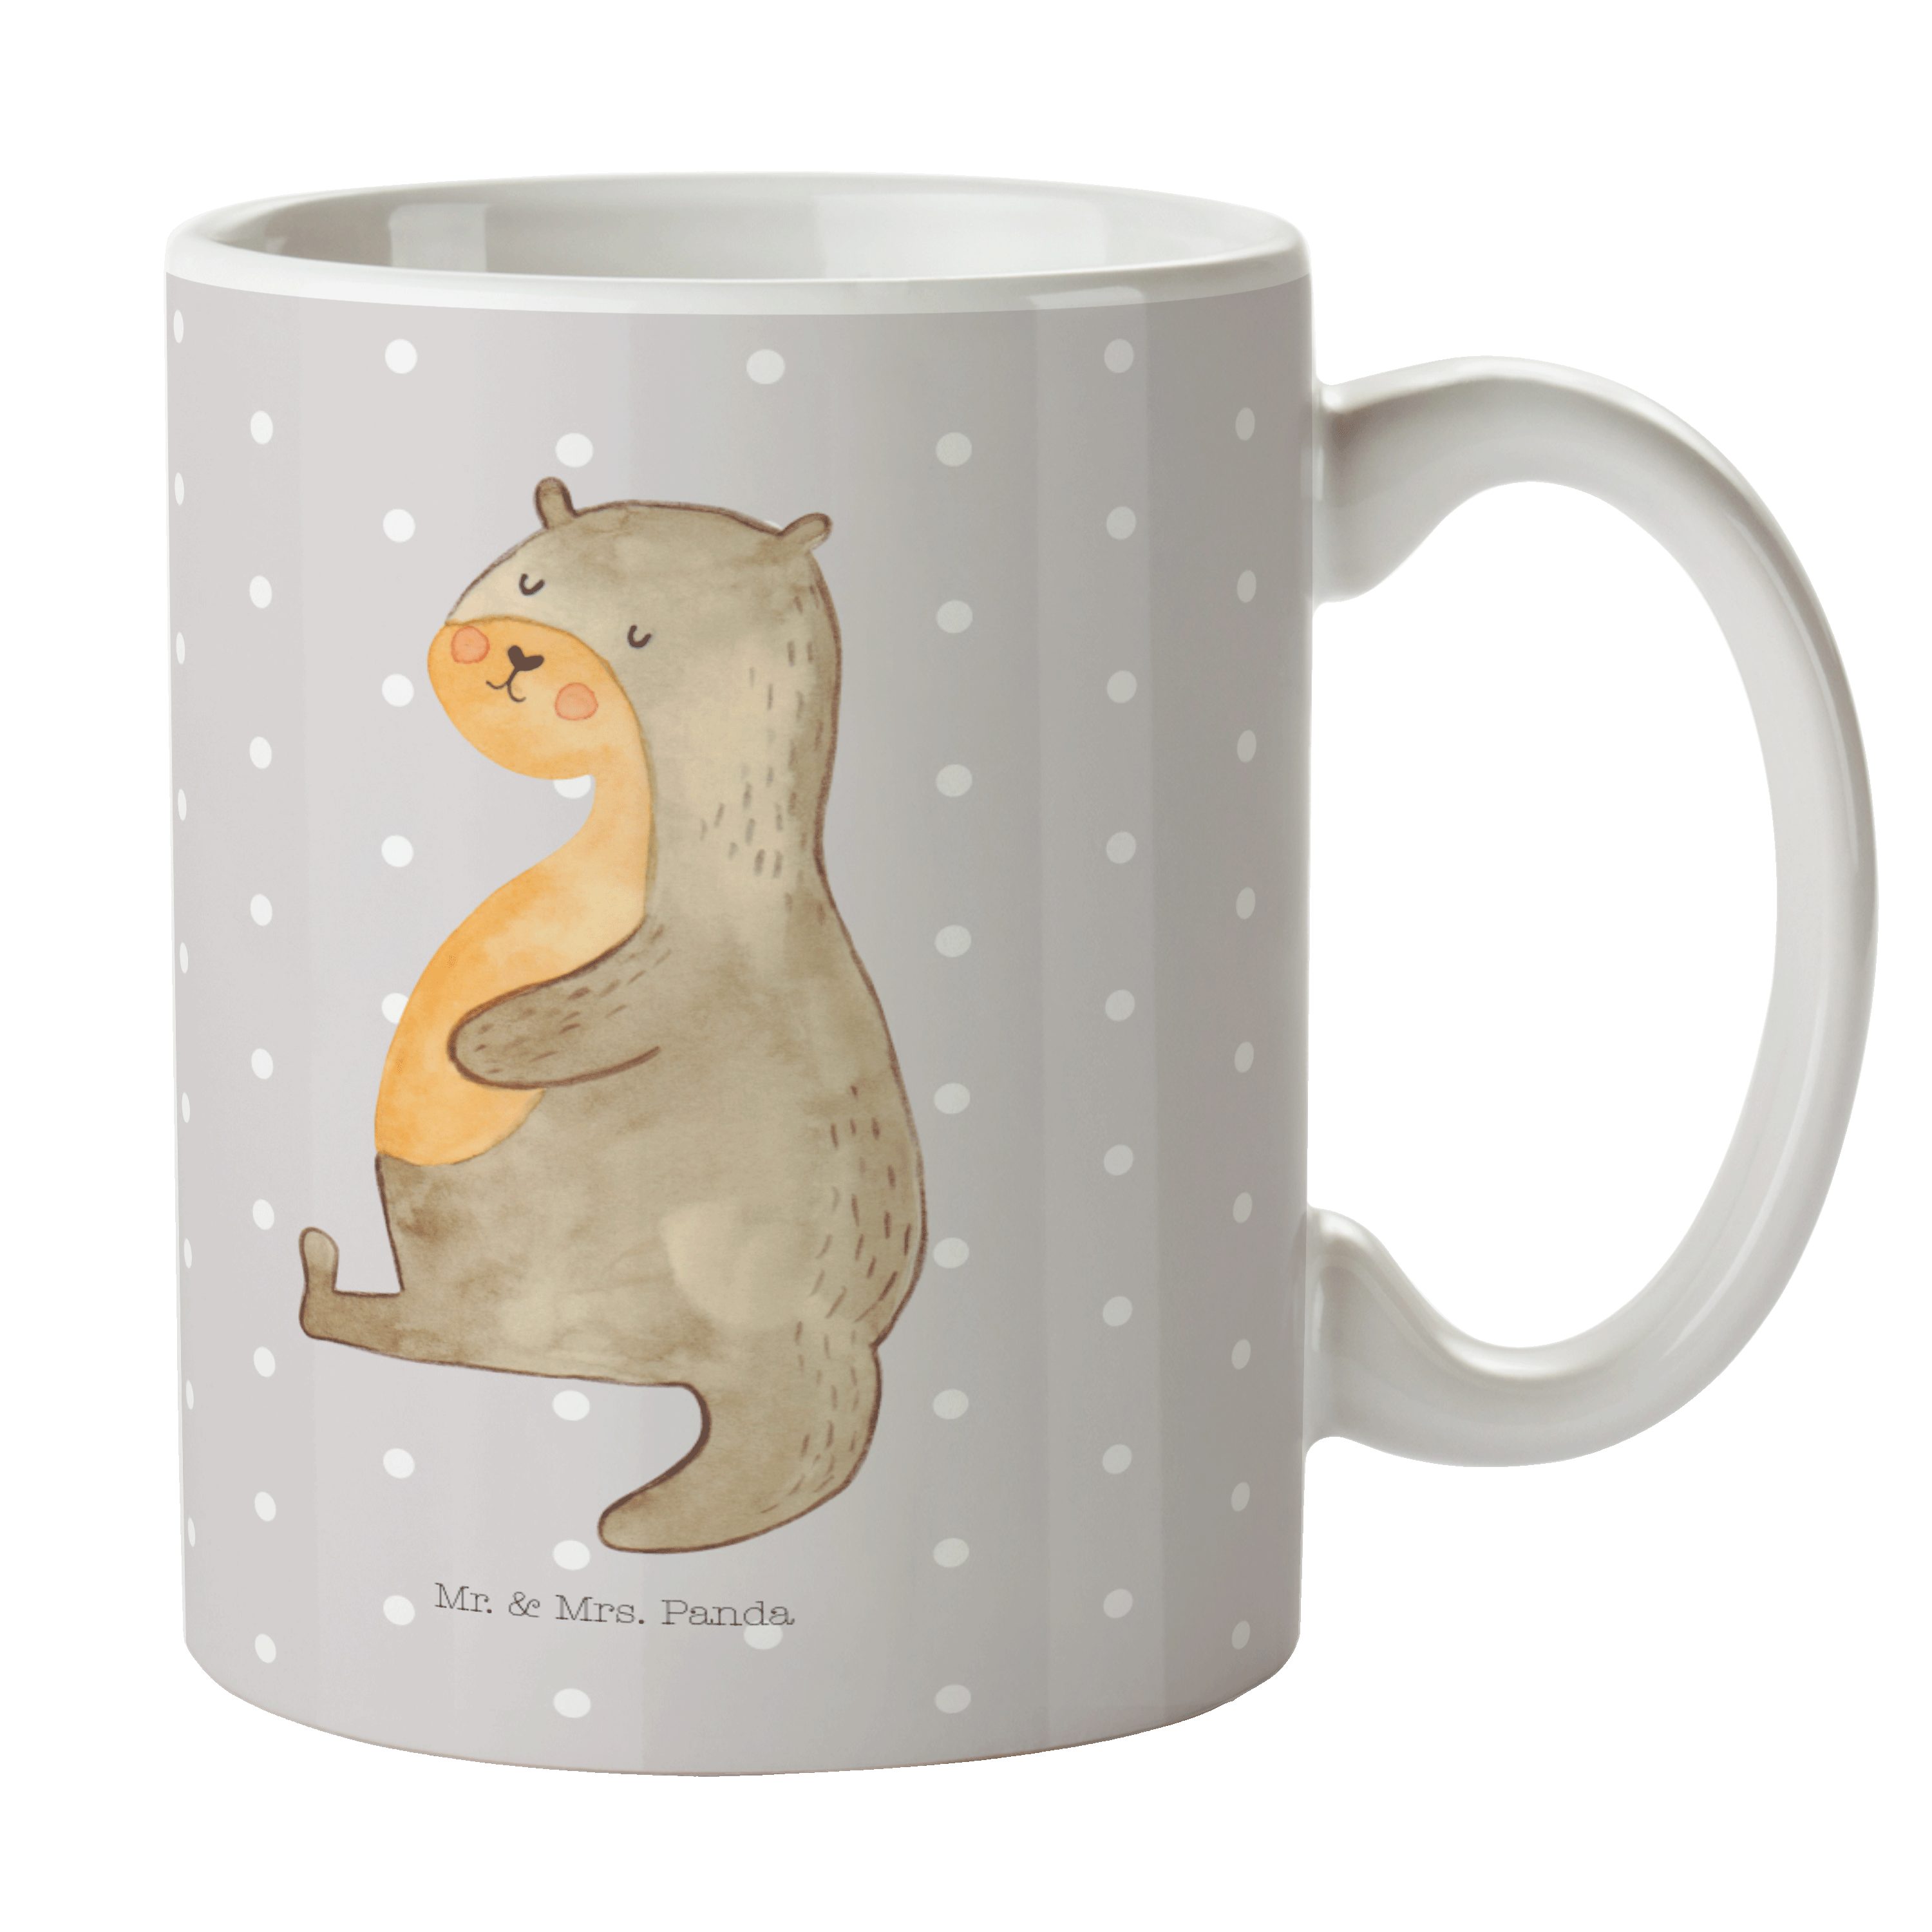 Mr. & Mrs. Panda Tasse Otter Bauch - Grau Pastell - Geschenk, Otter Seeotter See Otter, Seeo, Keramik